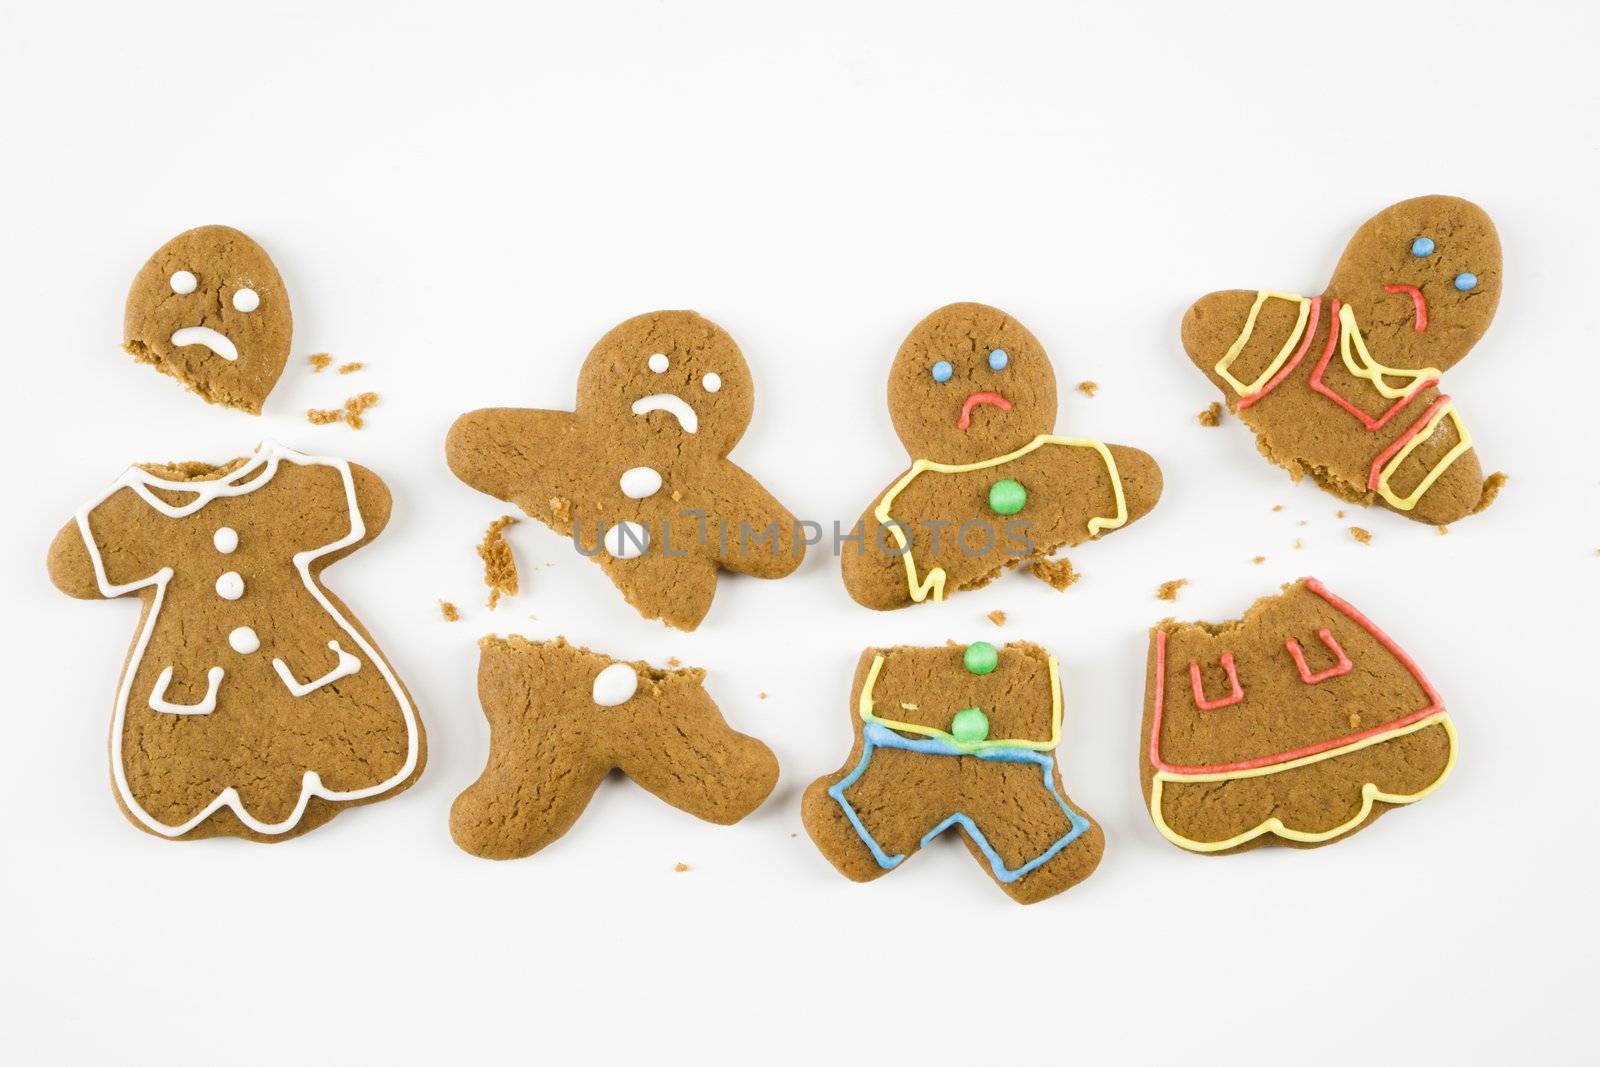 Broken gingerbread cookies. by iofoto